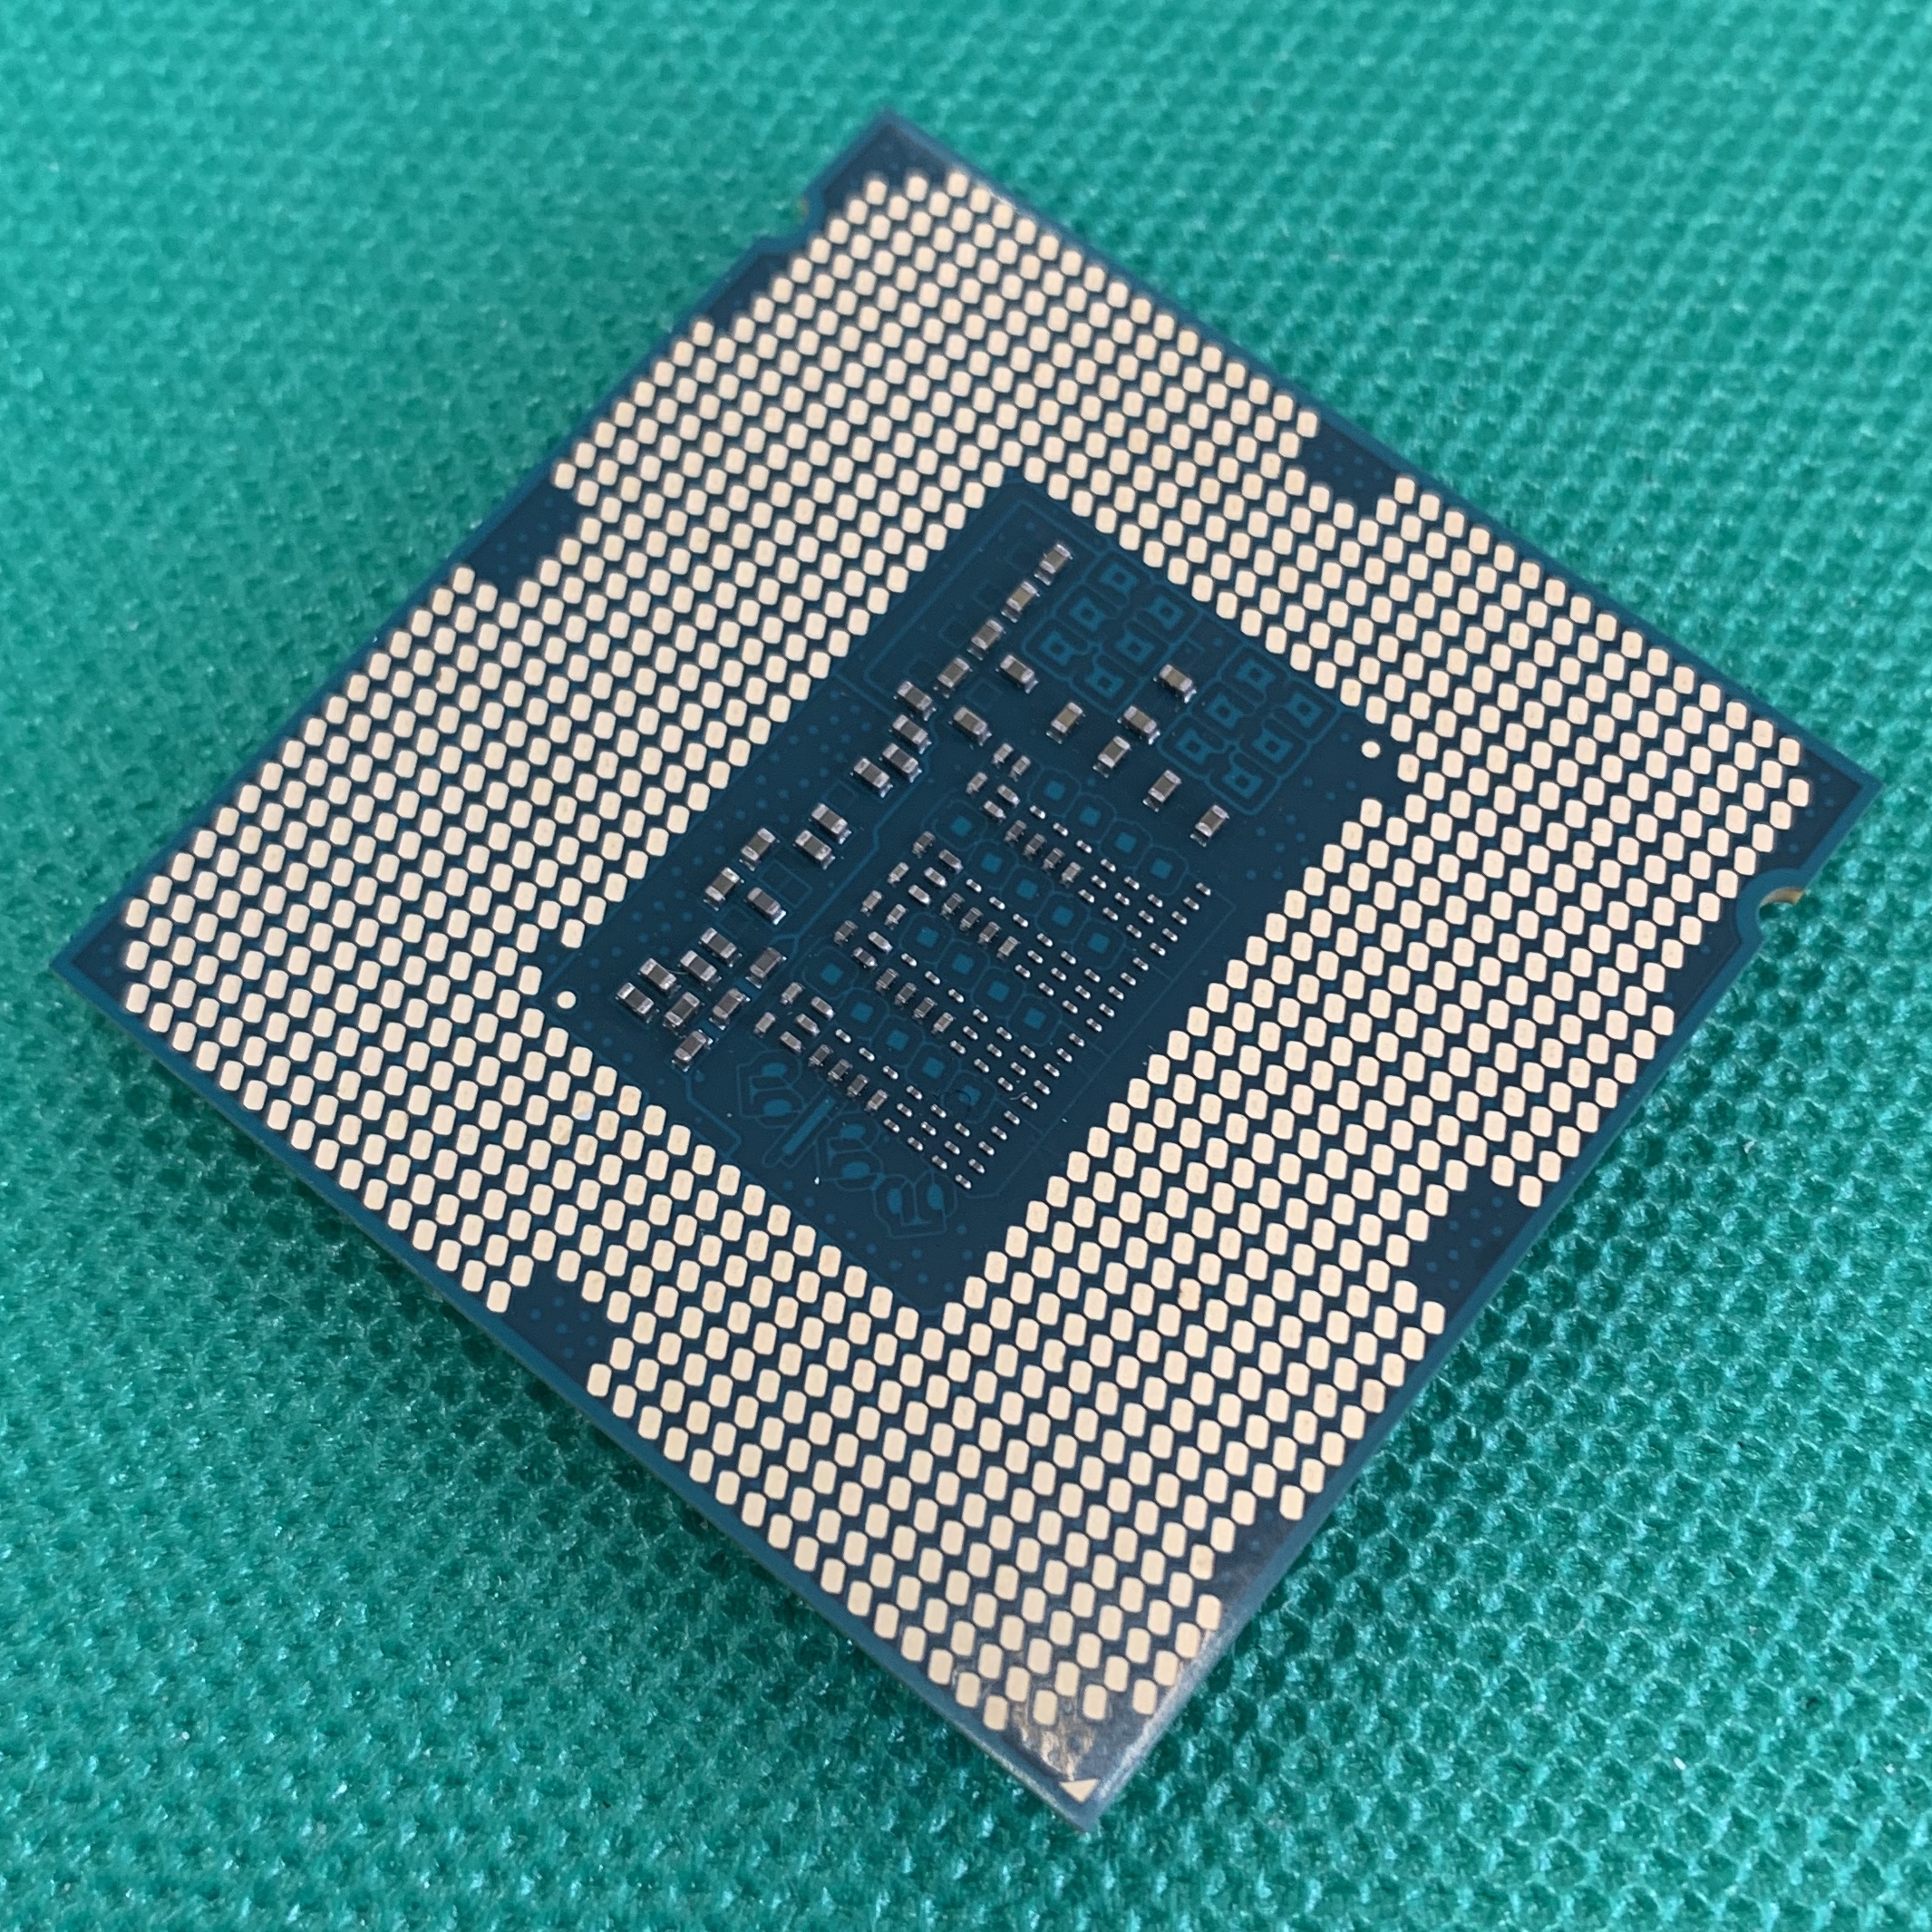 Интел i5 4460. Intel Core i5 LGA. Intel Core i5-4590. I5 4460 сокет. Socket 1150 процессоры.